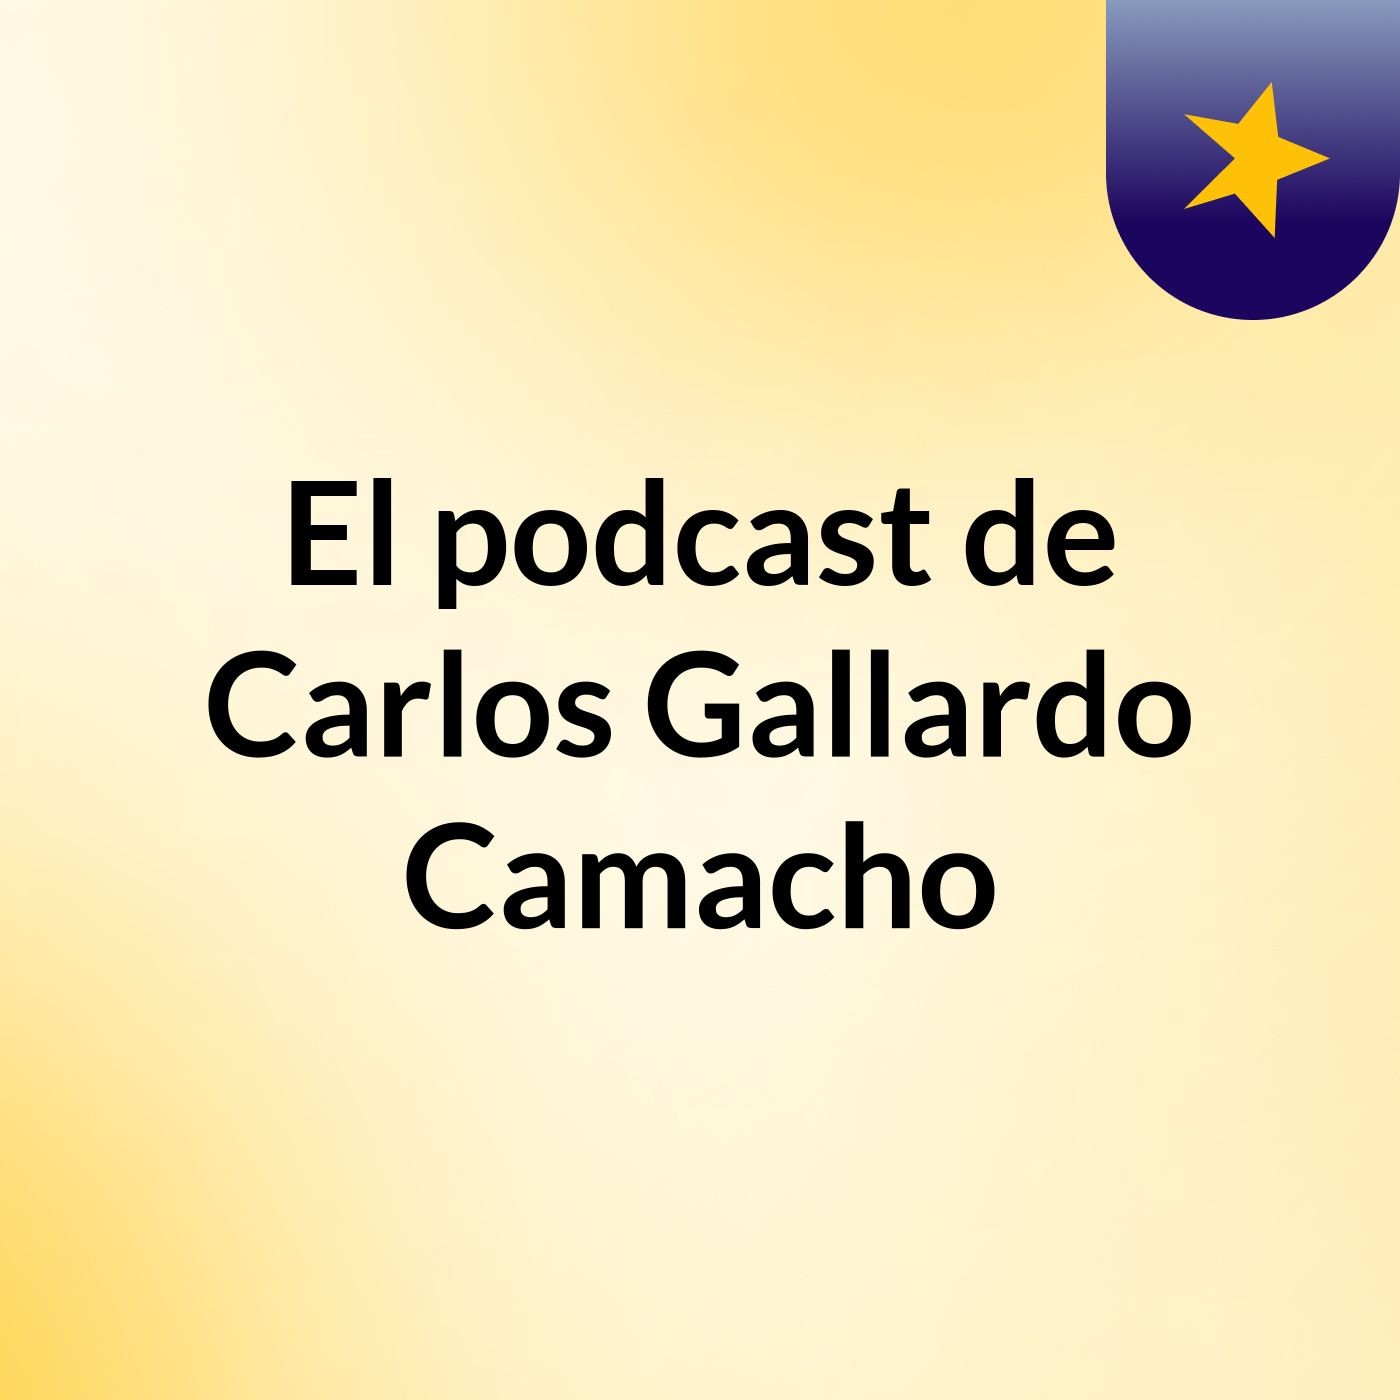 Episodio 8 - El podcast de Carlos Gallardo Camacho